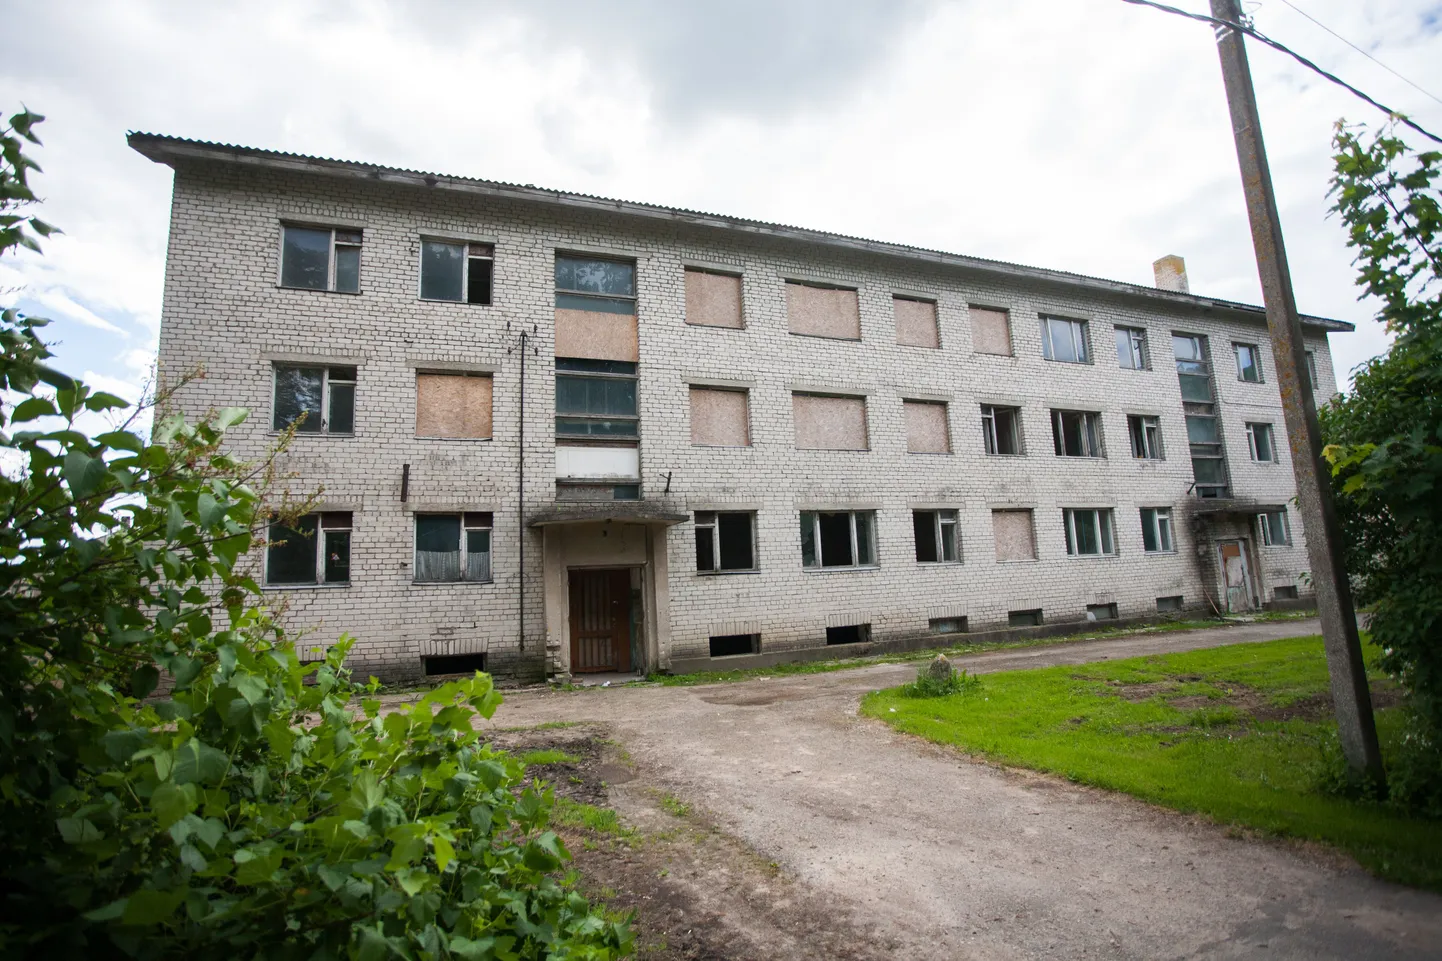 Hoone asub Viisu külas Roosna-Alliku vallas Järvamaal.